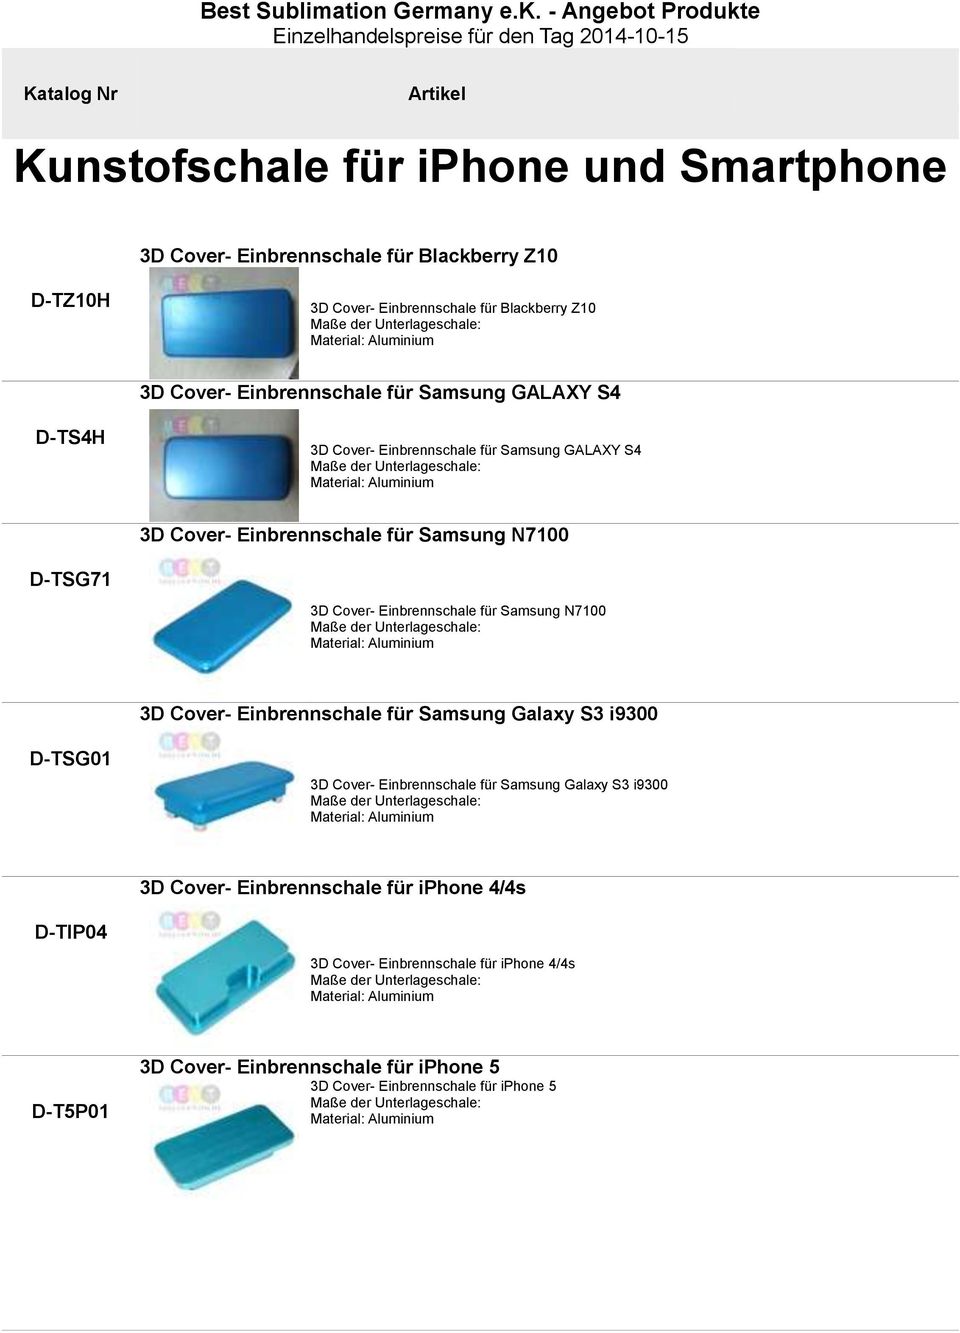 Einbrennschale für Samsung N7100 Maße der Unterlageschale: Material: Aluminium 3D Cover- Einbrennschale für Samsung Galaxy S3 i9300 TSG01 3D Cover- Einbrennschale für Samsung Galaxy S3 i9300 Maße der